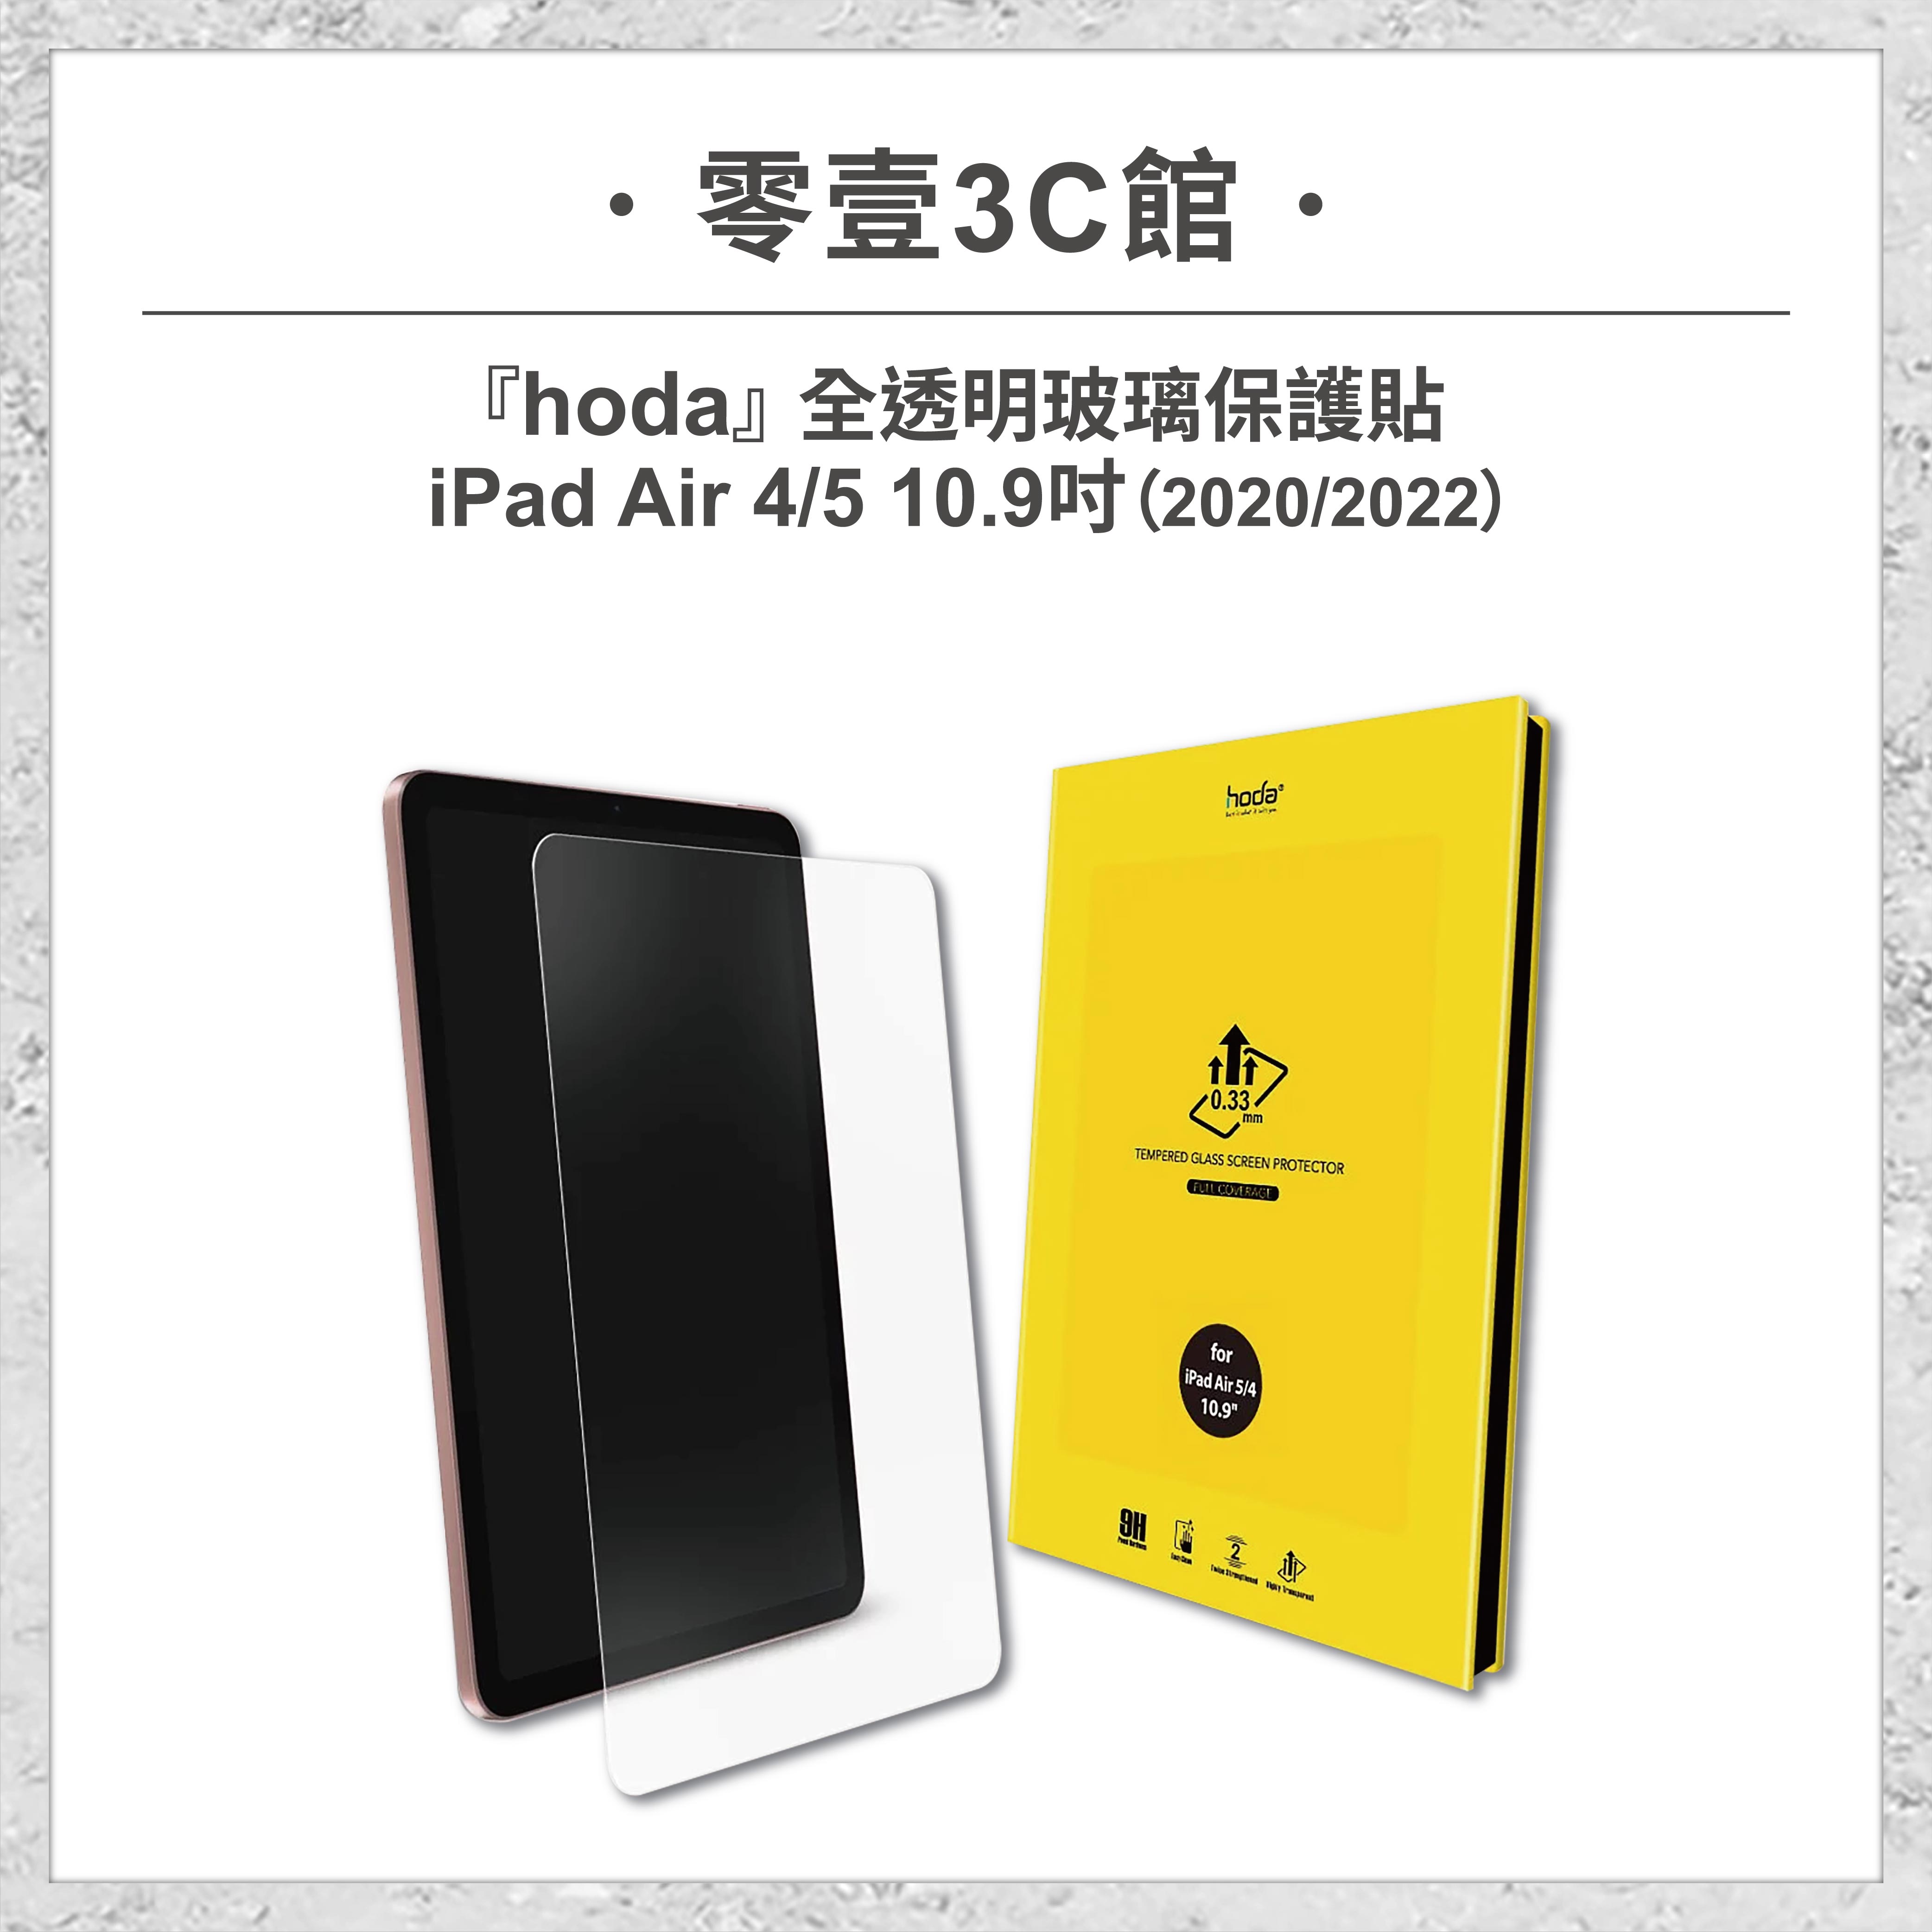 【hoda】Apple iPad Air 4/5 10.9吋(2020/2022) 全透明玻璃保護貼 玻璃貼 螢幕保護貼